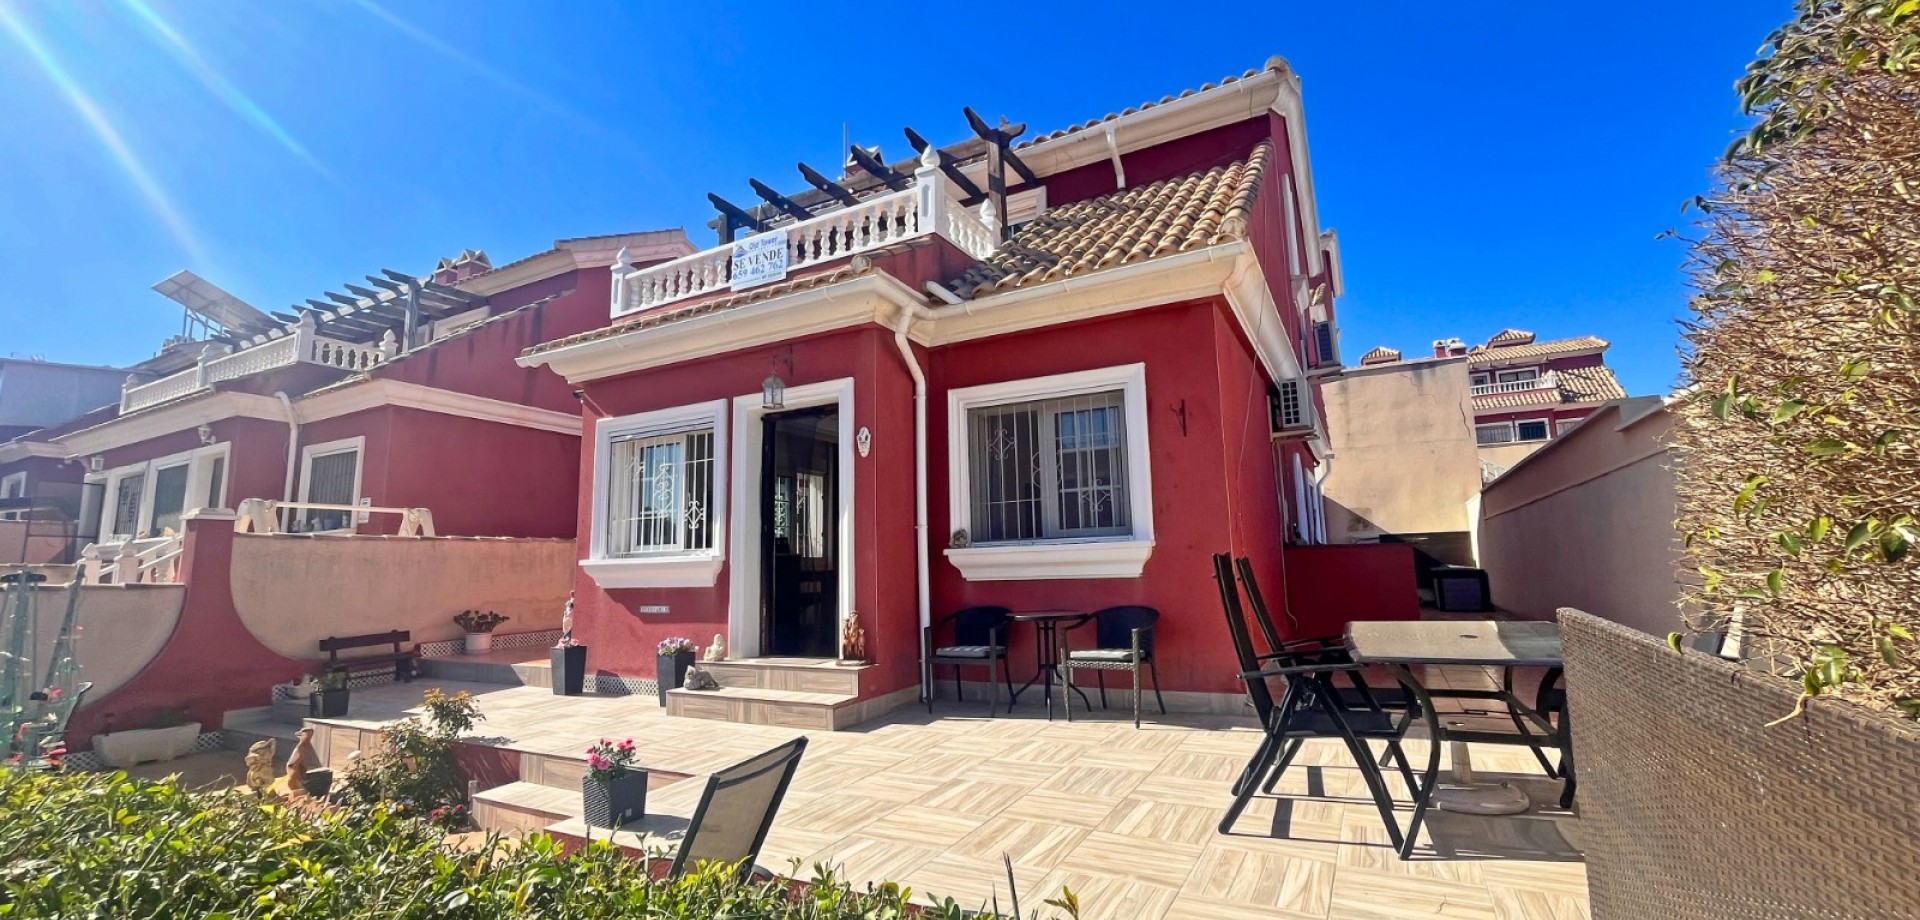 2 bedroom house / villa for sale in Orihuela Costa, Costa Blanca